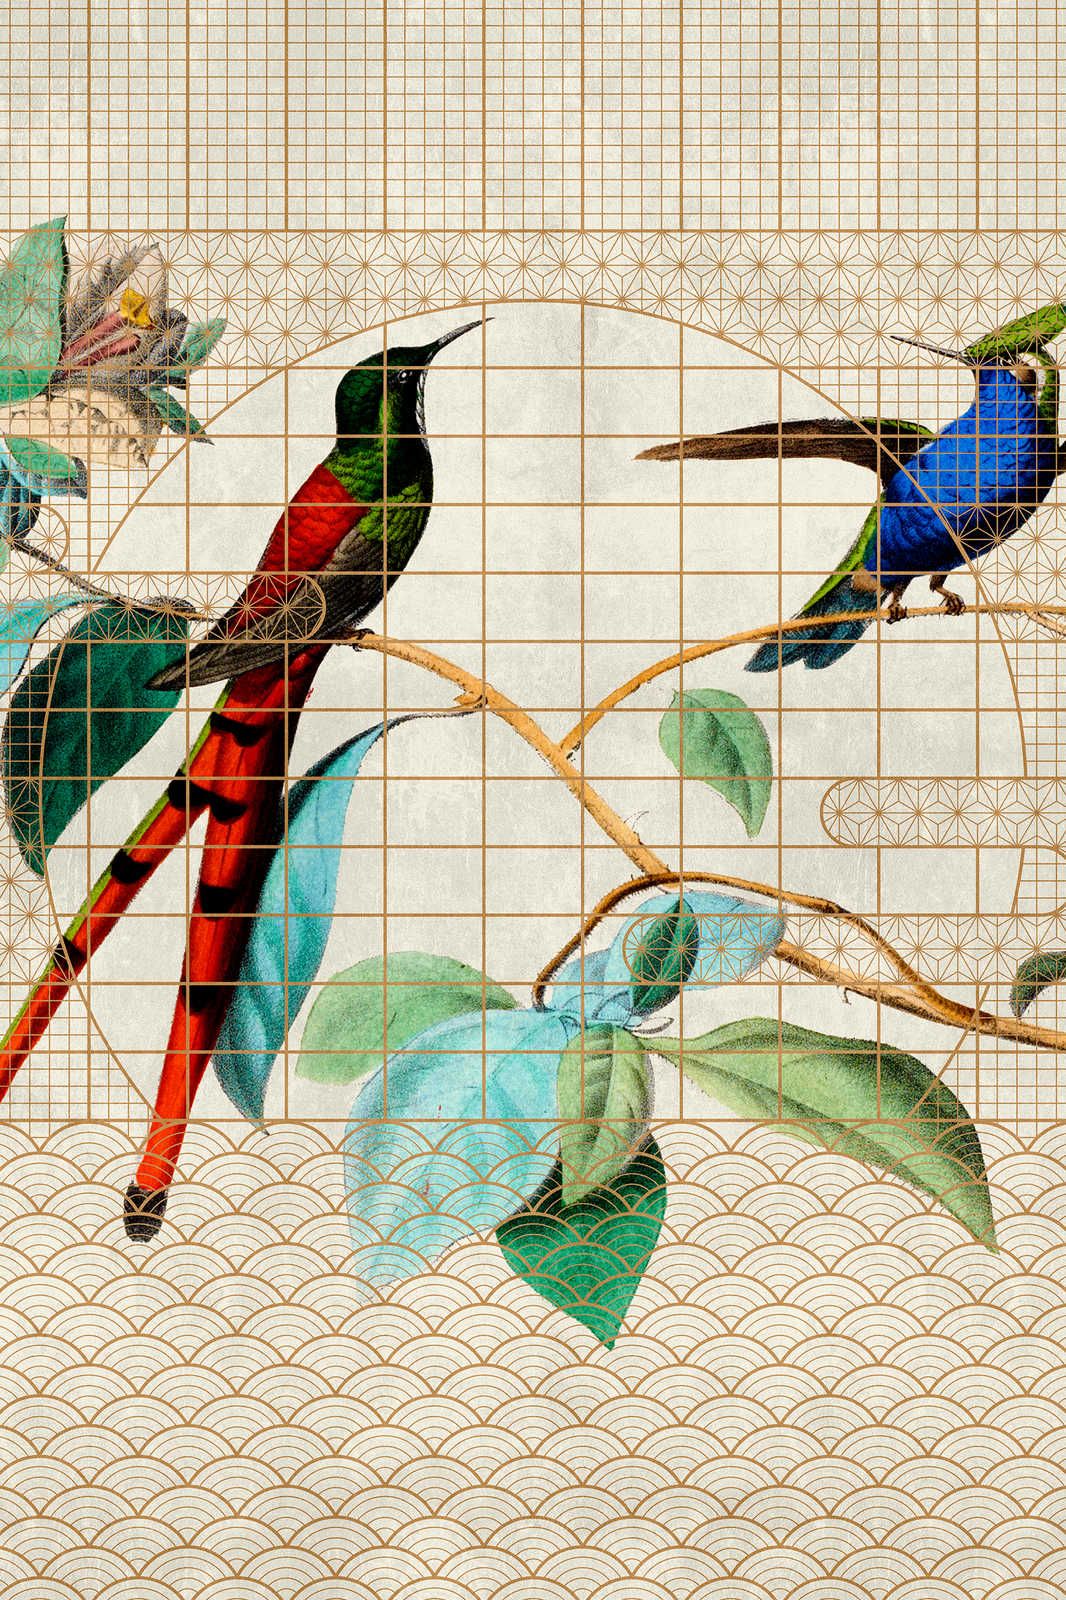             Volière 2 - Oiseaux toile oiseaux chanteurs dans une cage dorée - 0,90 m x 0,60 m
        